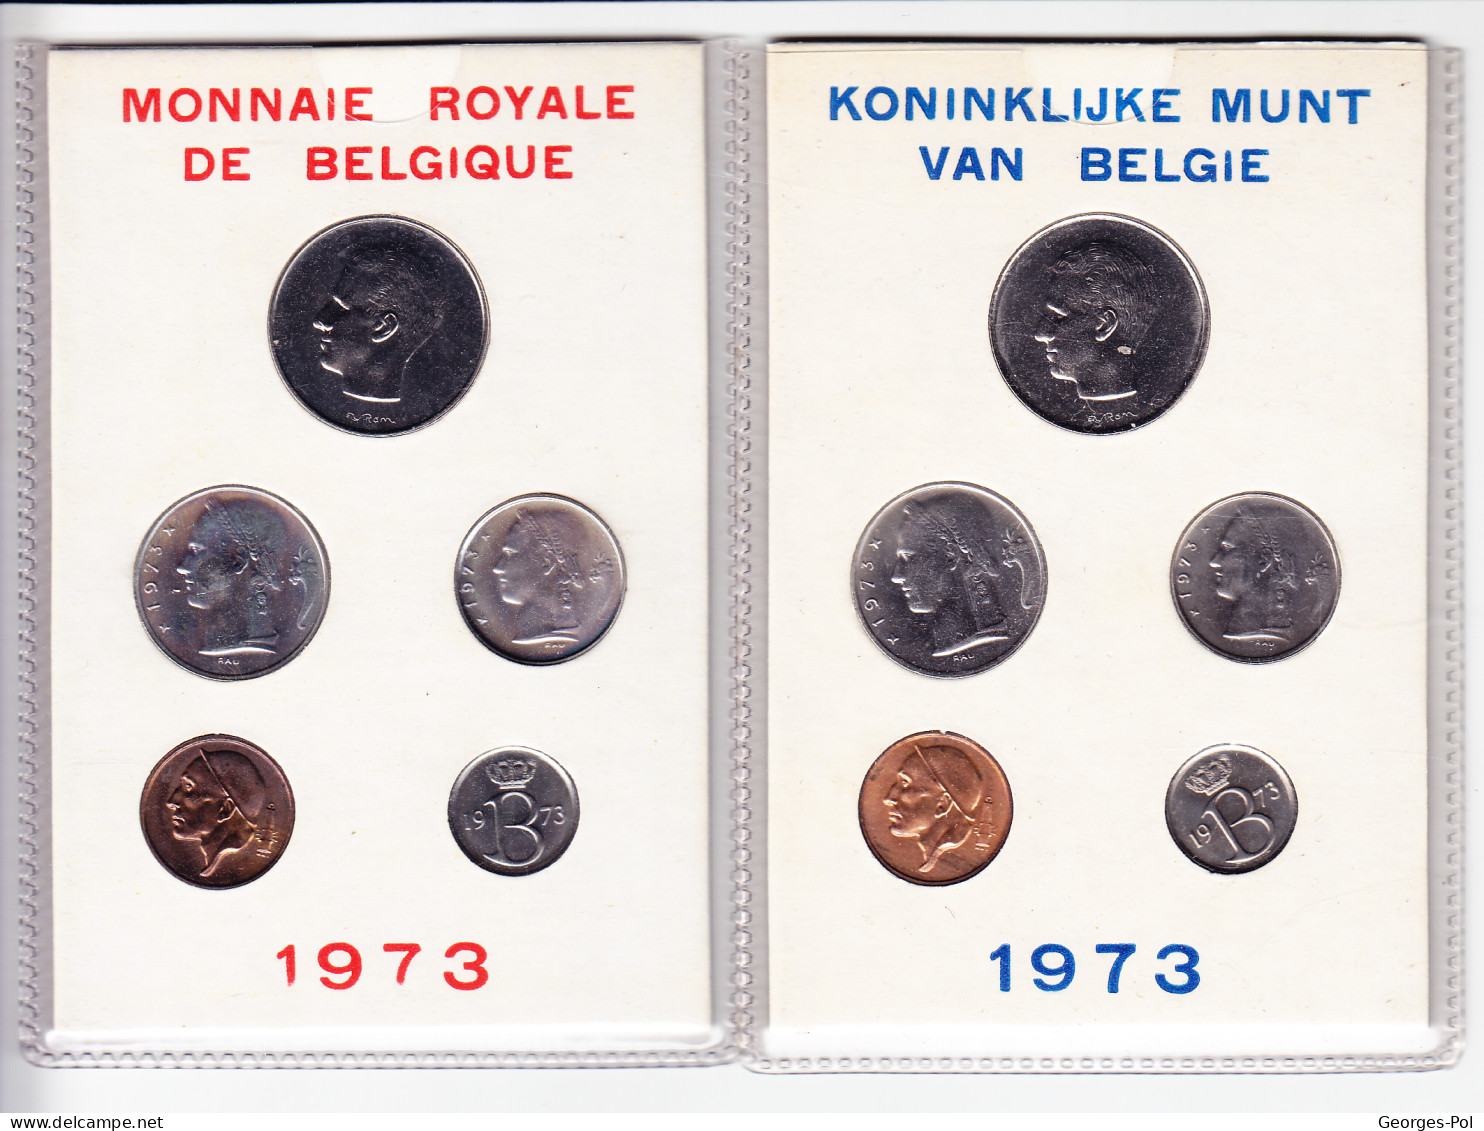 Monnaie Royale De Belgique 1973 Koninklijke Munt Van België. 2 Cartes De 5 Pièces Non Circulées - FDC, BU, BE & Coffrets